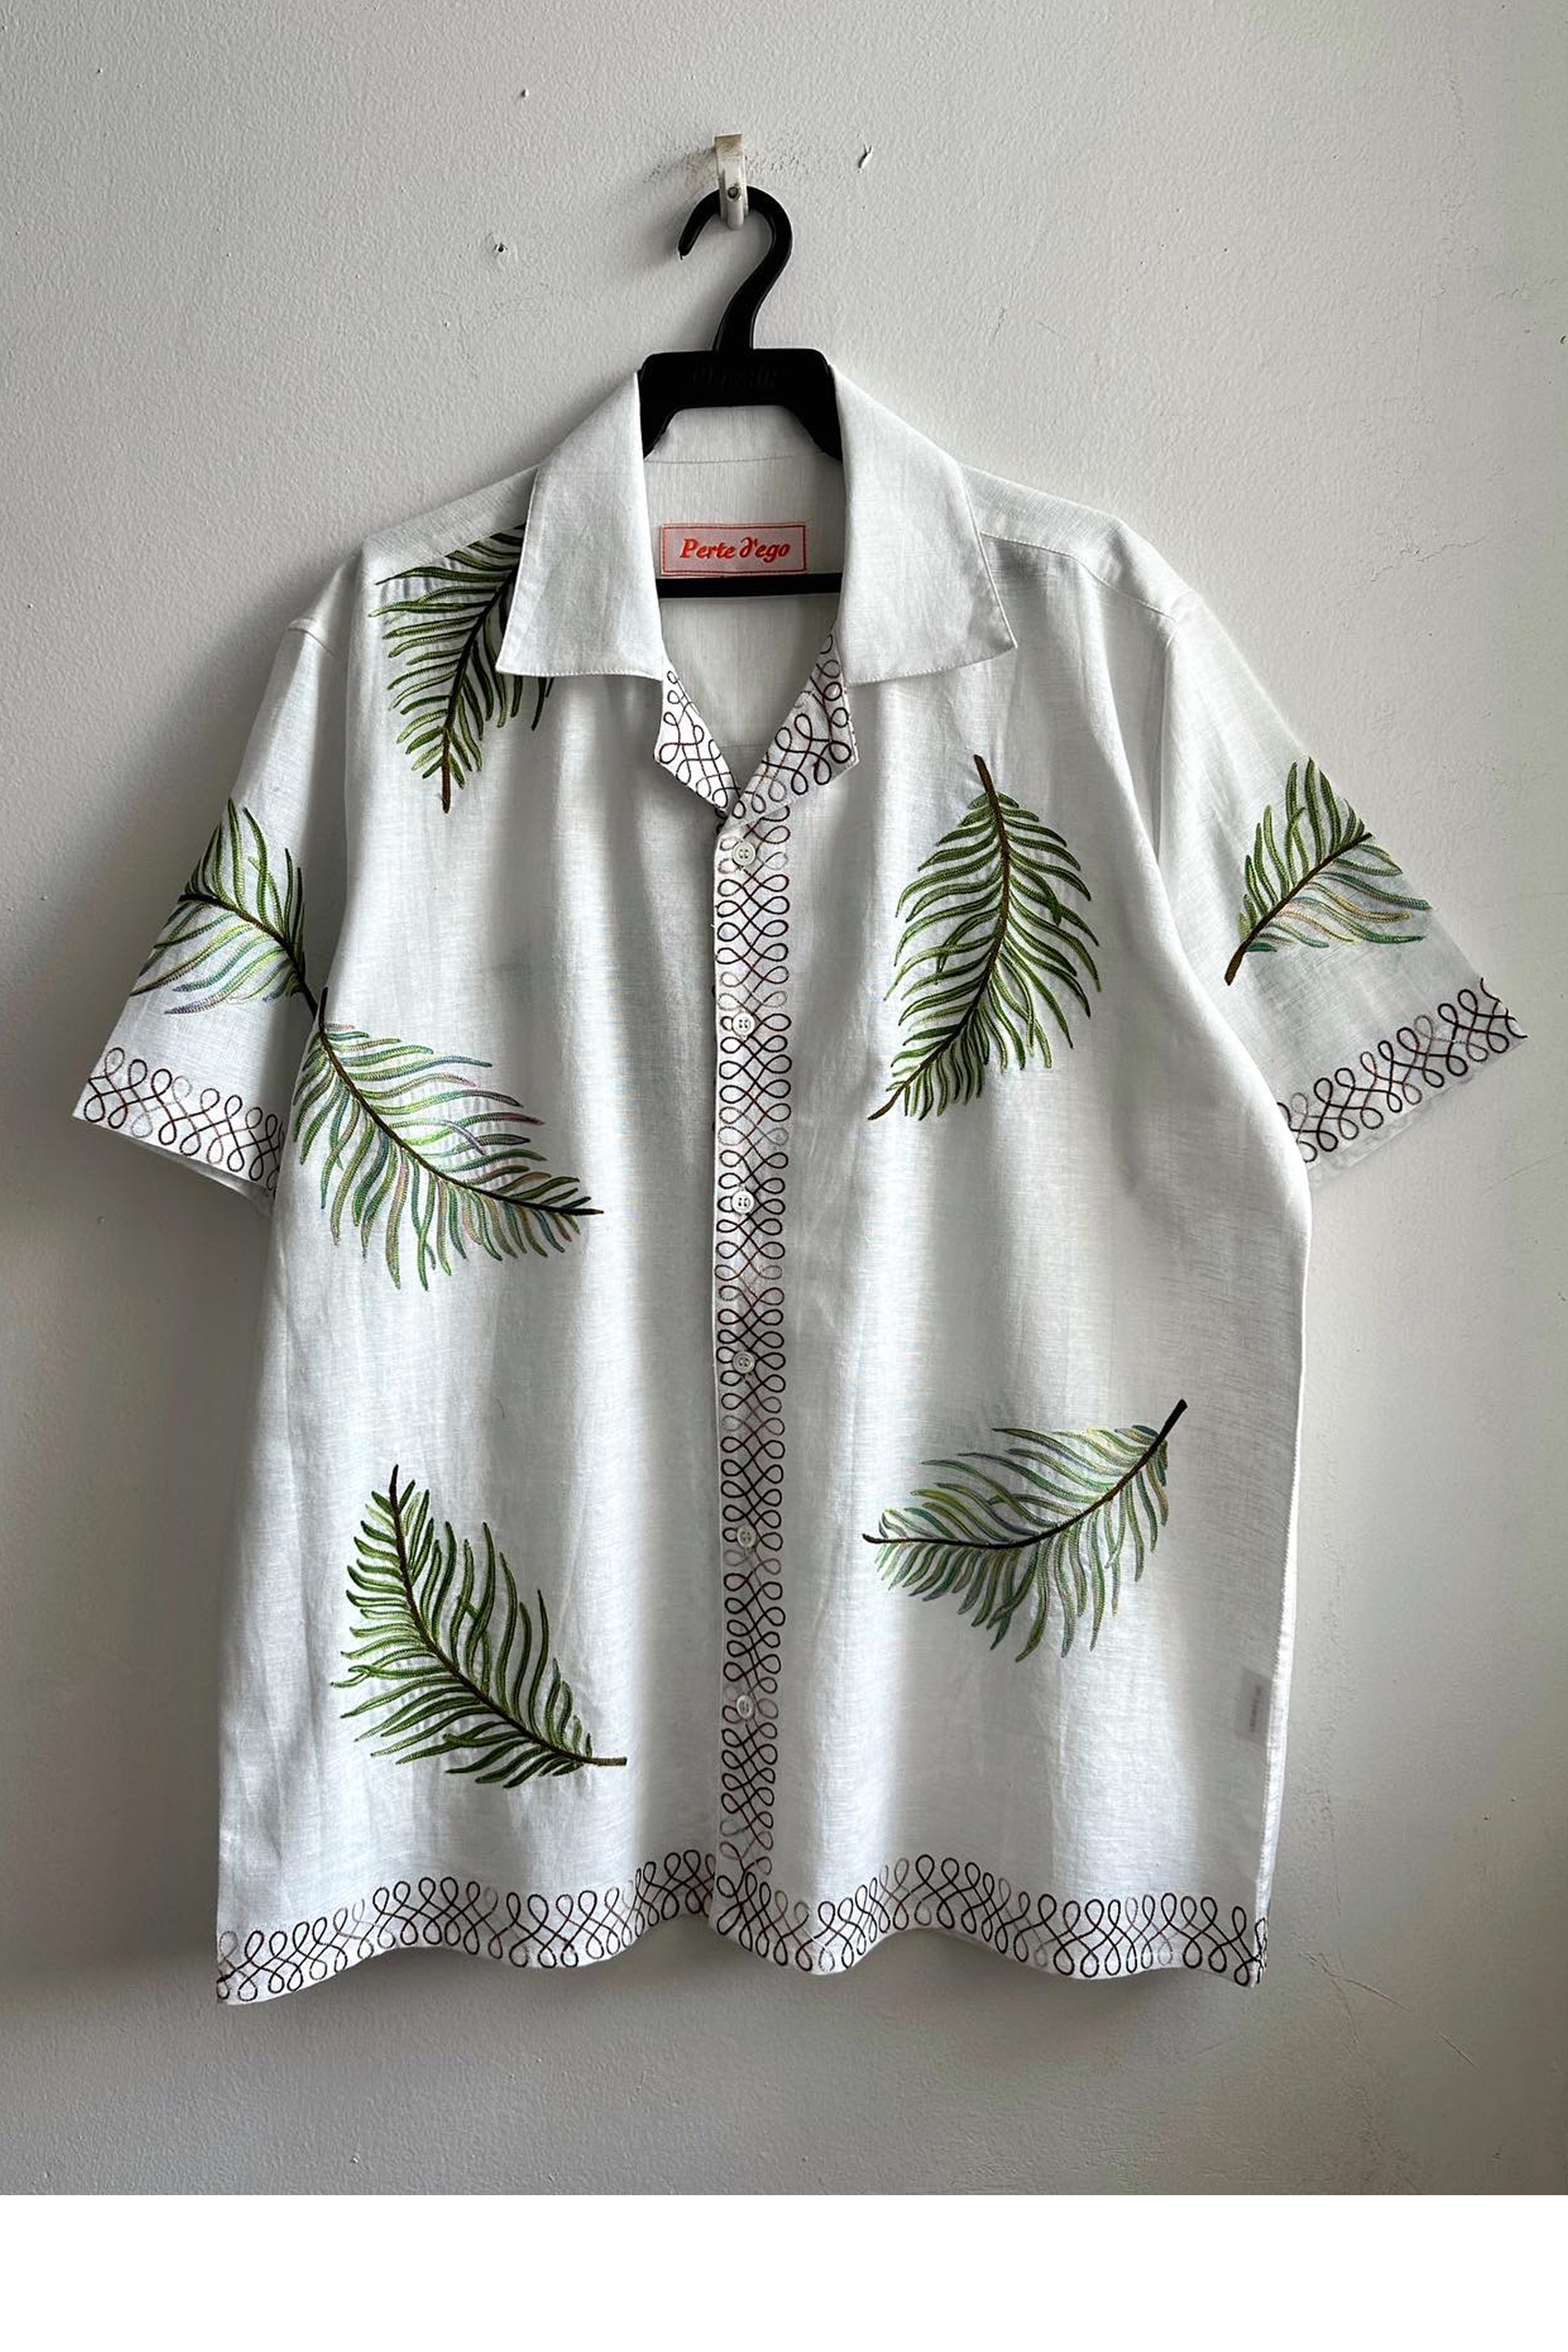 Louis Embroidered Linen Resort Shirt